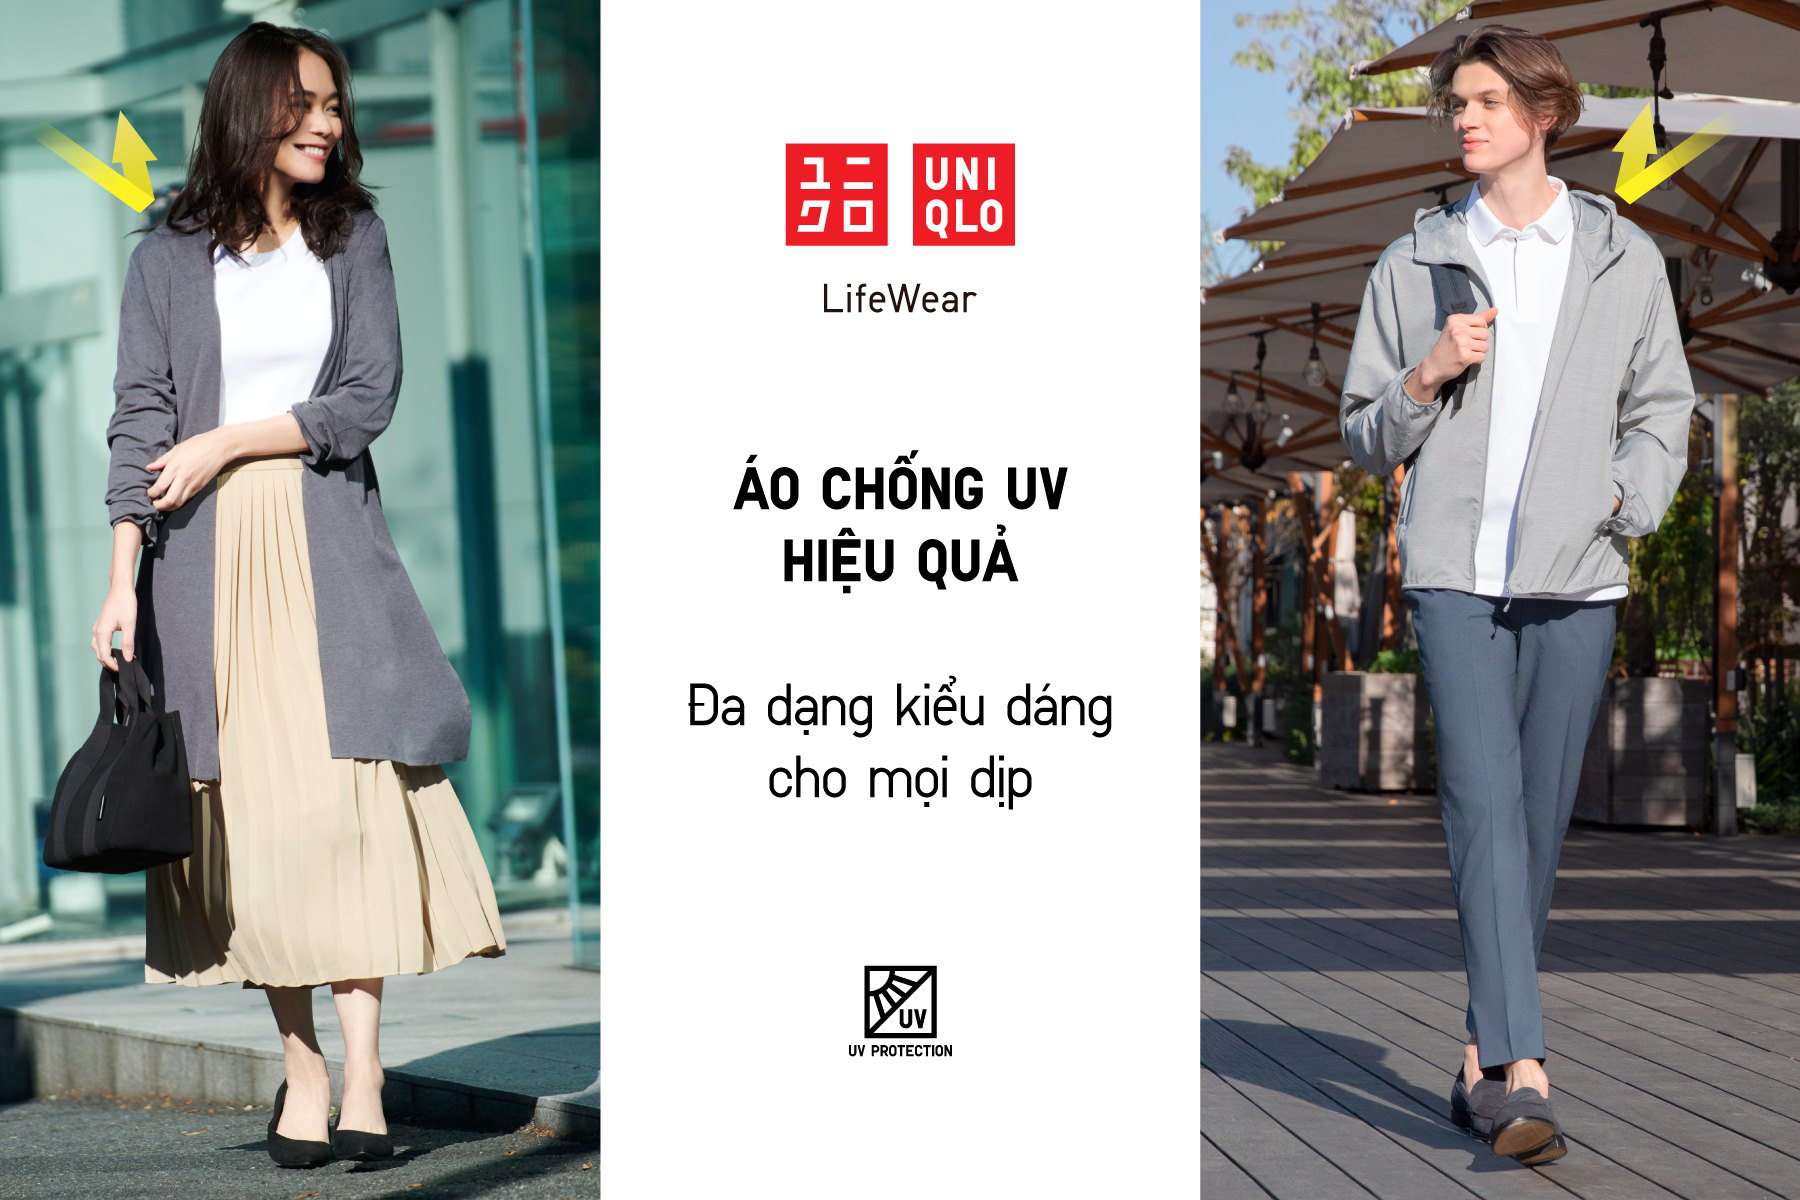 6 brand áo chống nắng được tin dùng nhất tại Việt Nam: Giá từ 400k, chất liệu mát mẻ và chống nắng hiệu quả nên rất đáng đầu tư - Ảnh 3.